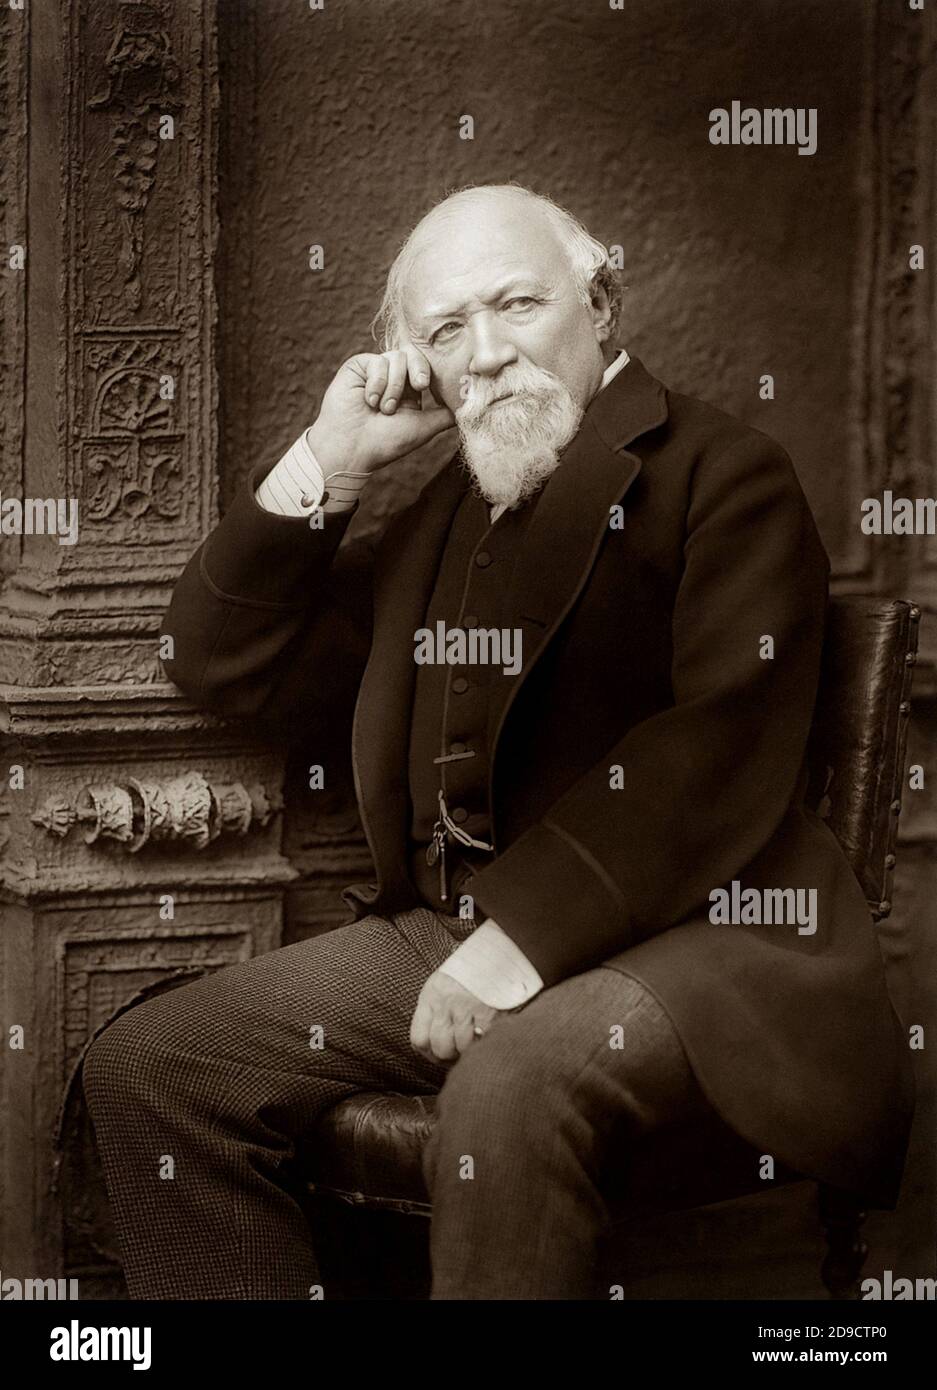 1888 ca., GRAN BRETAGNA : il poeta e scrittore britannico ROBERT BROWNING ( 1812 - 1889 ) . Sposato con la poeta Elizabeth Barrett nel 1846 . Foto di Herbert Rose Barraud (1845 - 1896 ca.). - SCRITTORE - LETTERATURA - LETTERATURA - letterato - POETA - POESIA - POESIA - barba - barba - ritratto - ritratto - uomo anziano - uomo vecchio - uomo vecchio anziano --- Archivio GBB Foto Stock